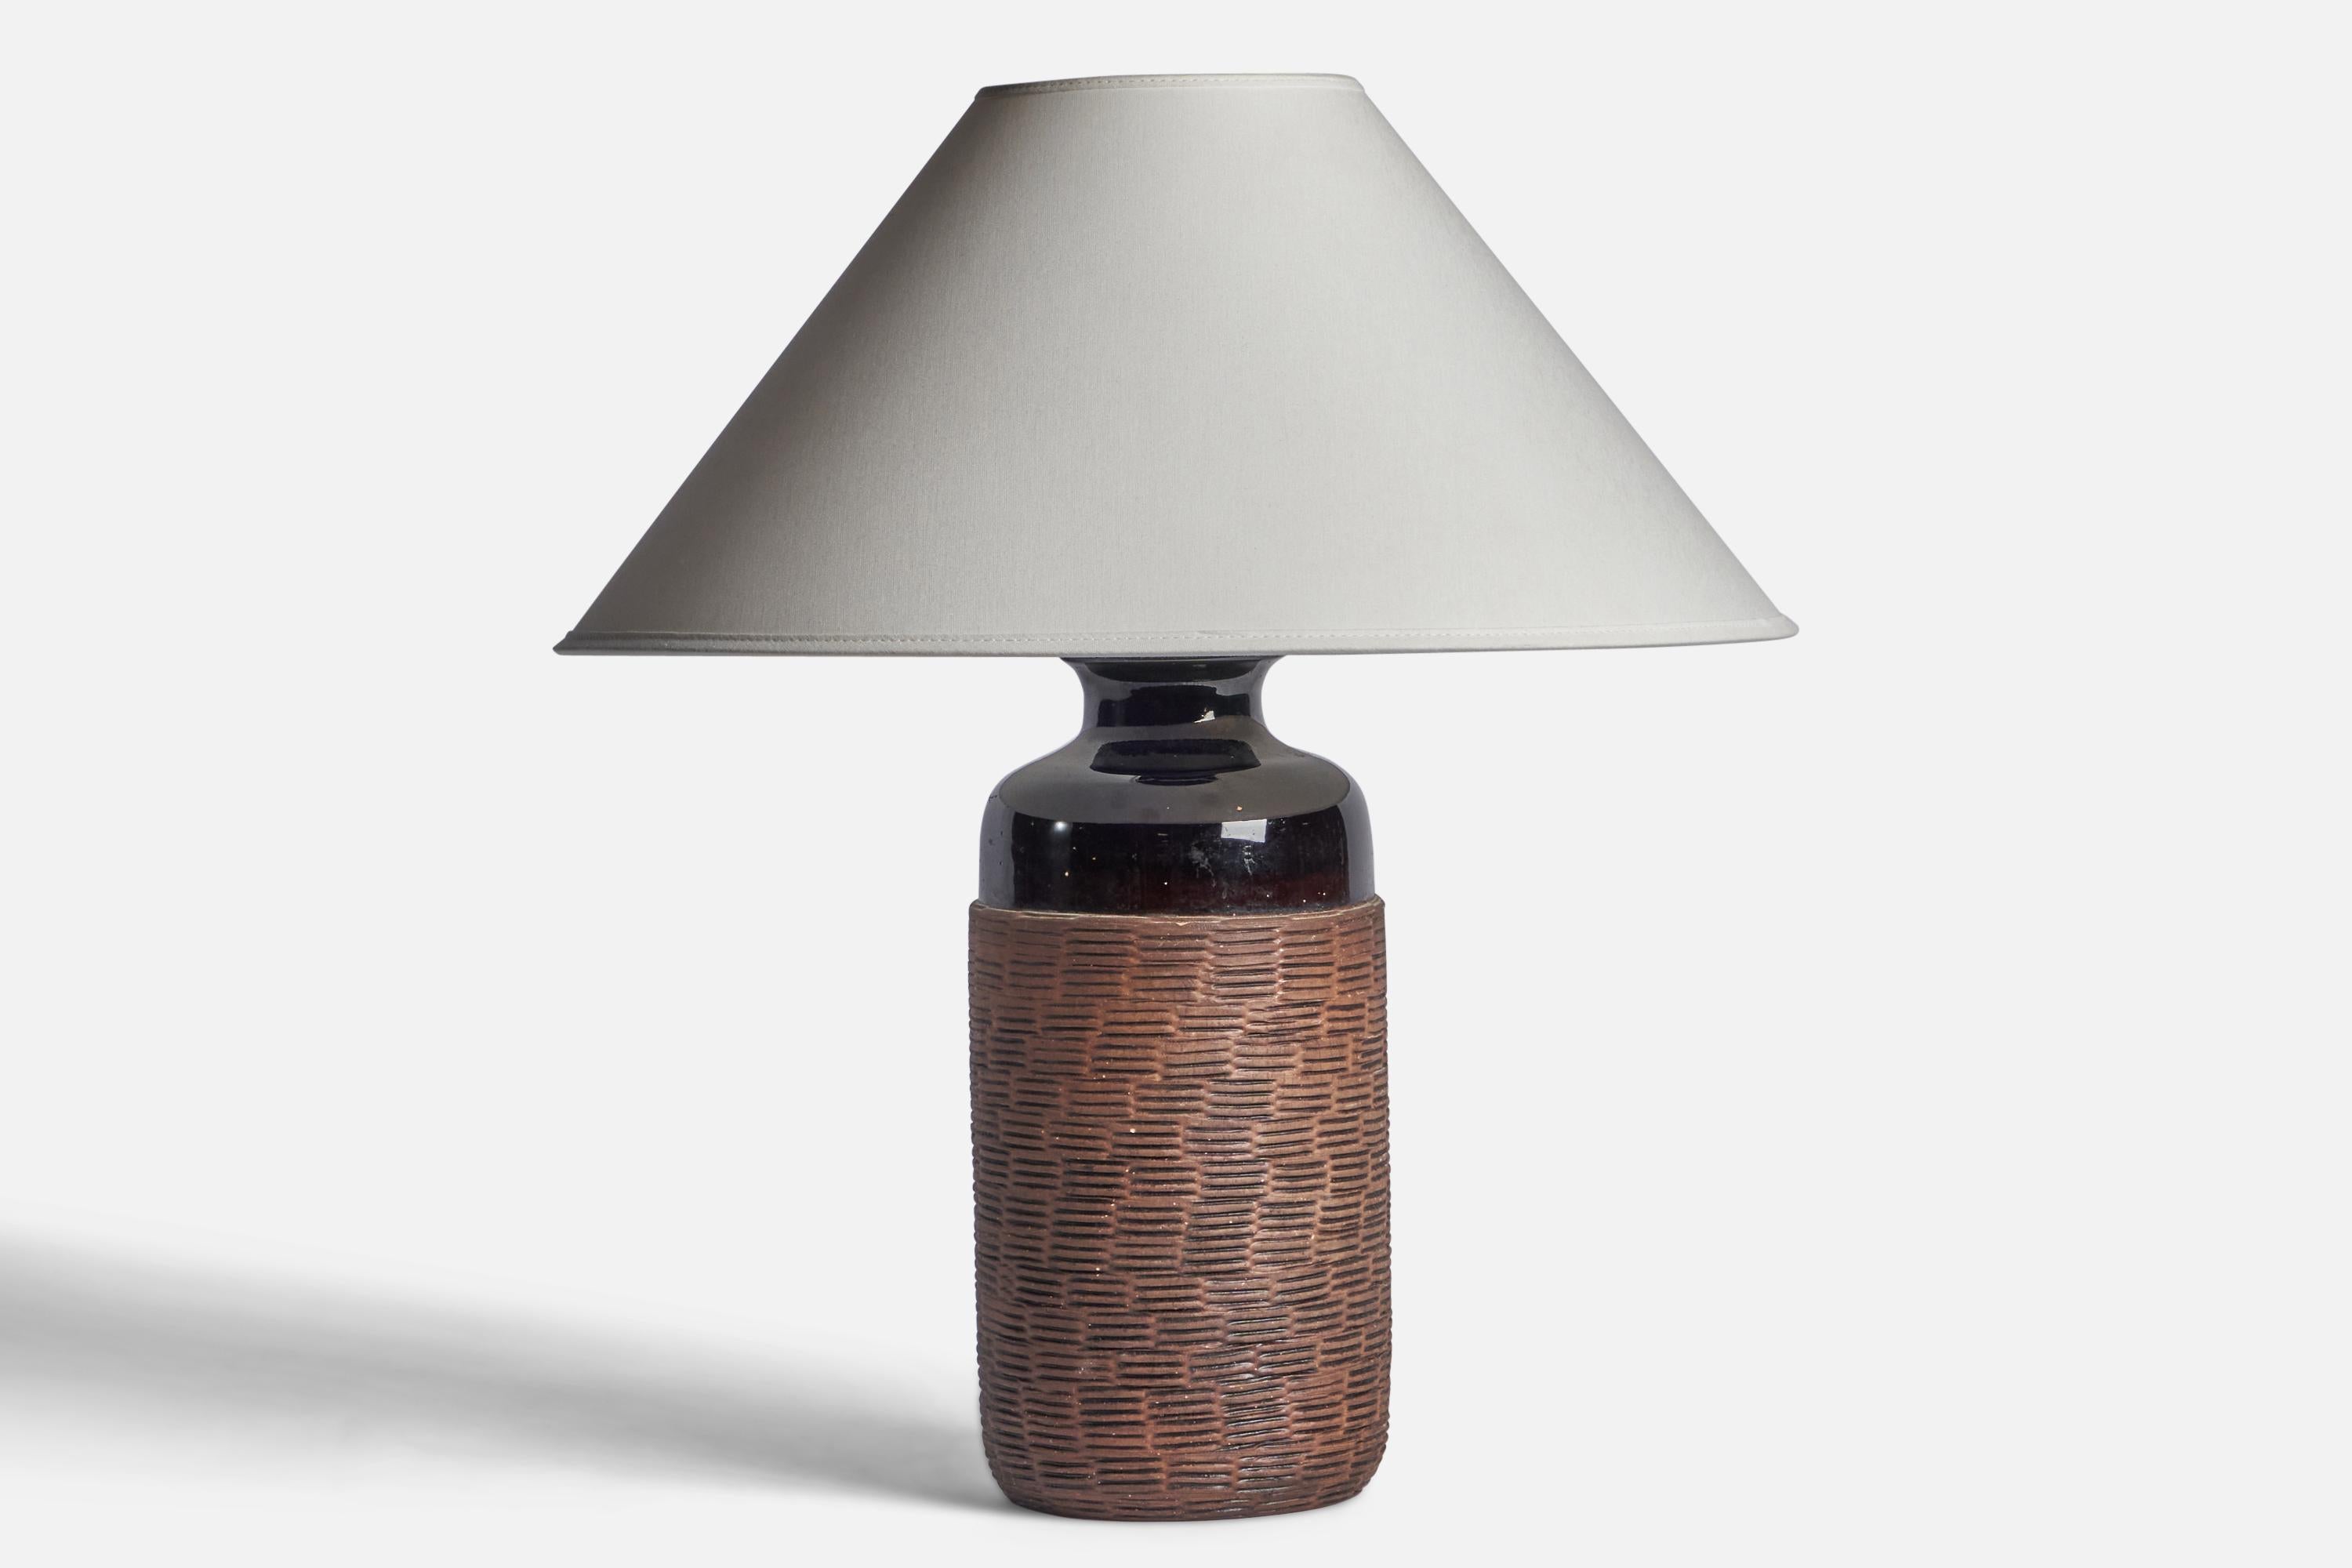 Schwarz und braun glasierte Tischlampe aus Steingut, entworfen und hergestellt in Schweden, 1960er Jahre.

Abmessungen der Lampe (Zoll): 14